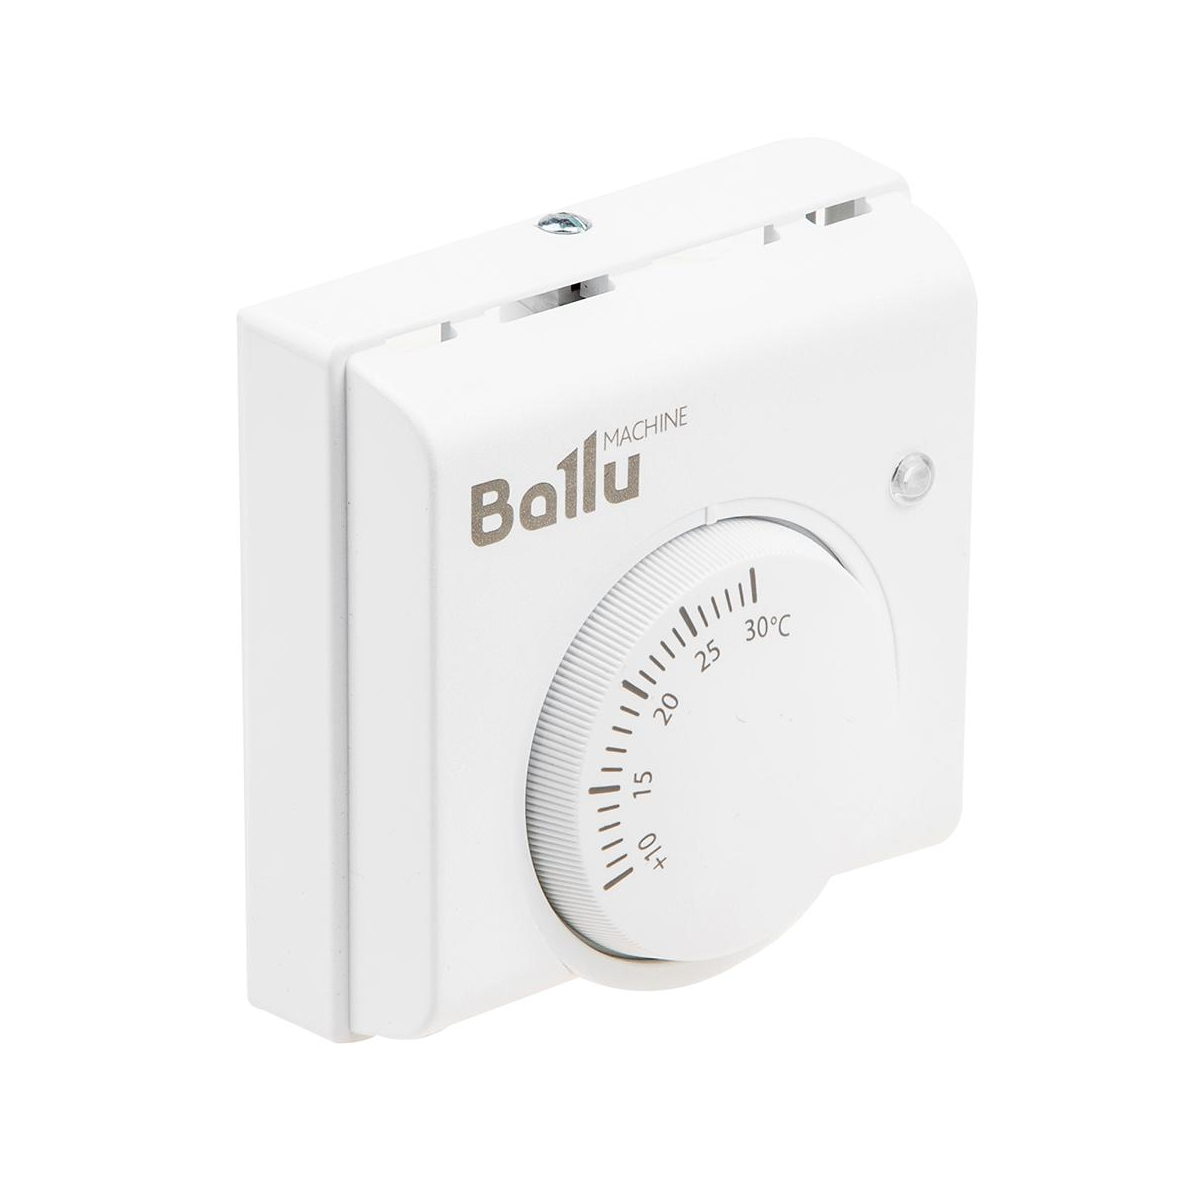 Механический термостат Ballu BMT-1 белый - цена, отзывы, фото и инструкция  - купить в Москве, СПб и РФ